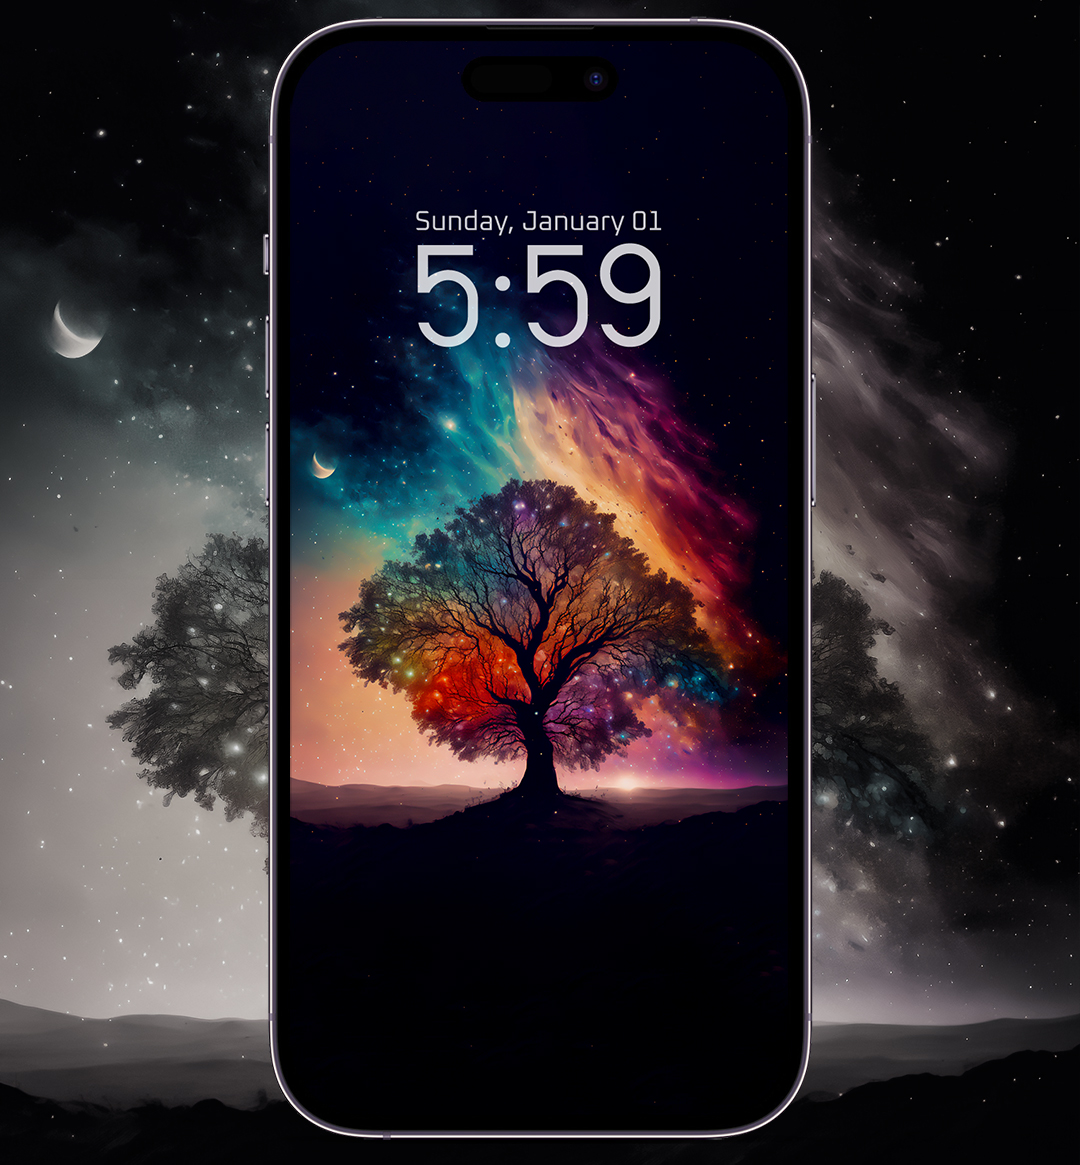 iPhone Wallpaper 4k - Magical tree